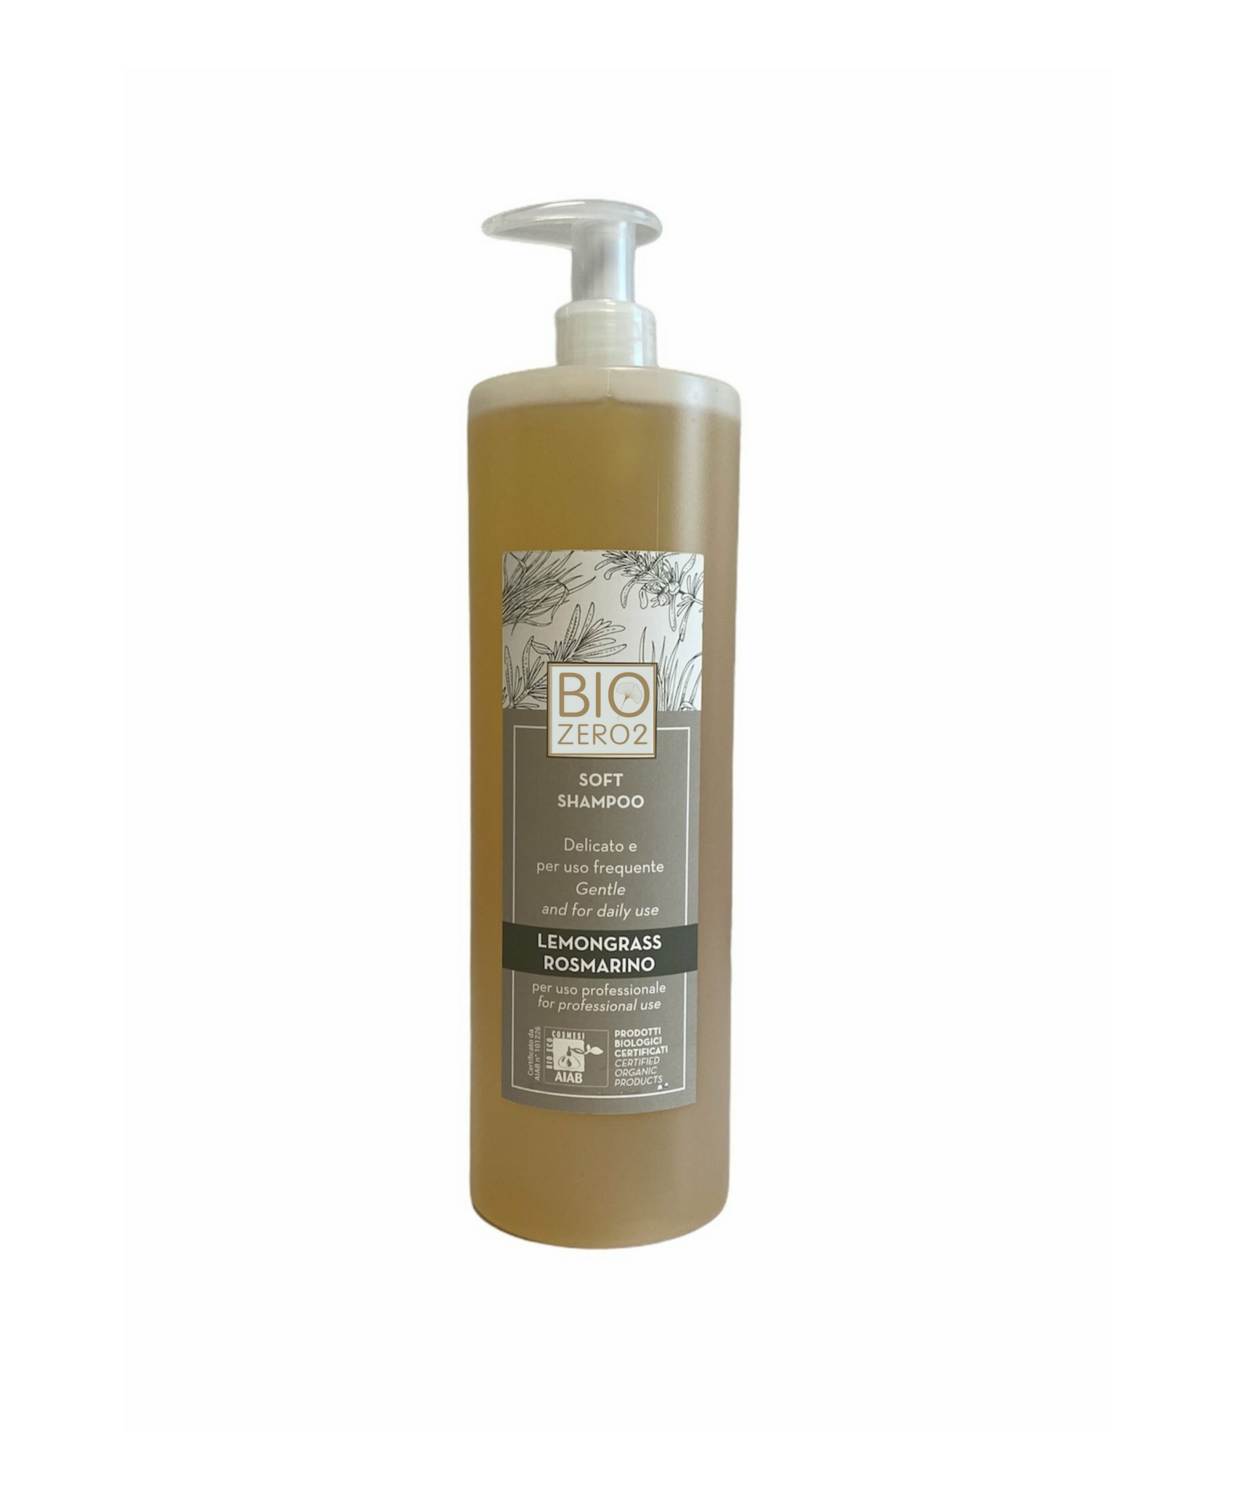 Shampoo Soft uso frequente per capelli medi e sottili 1000ml